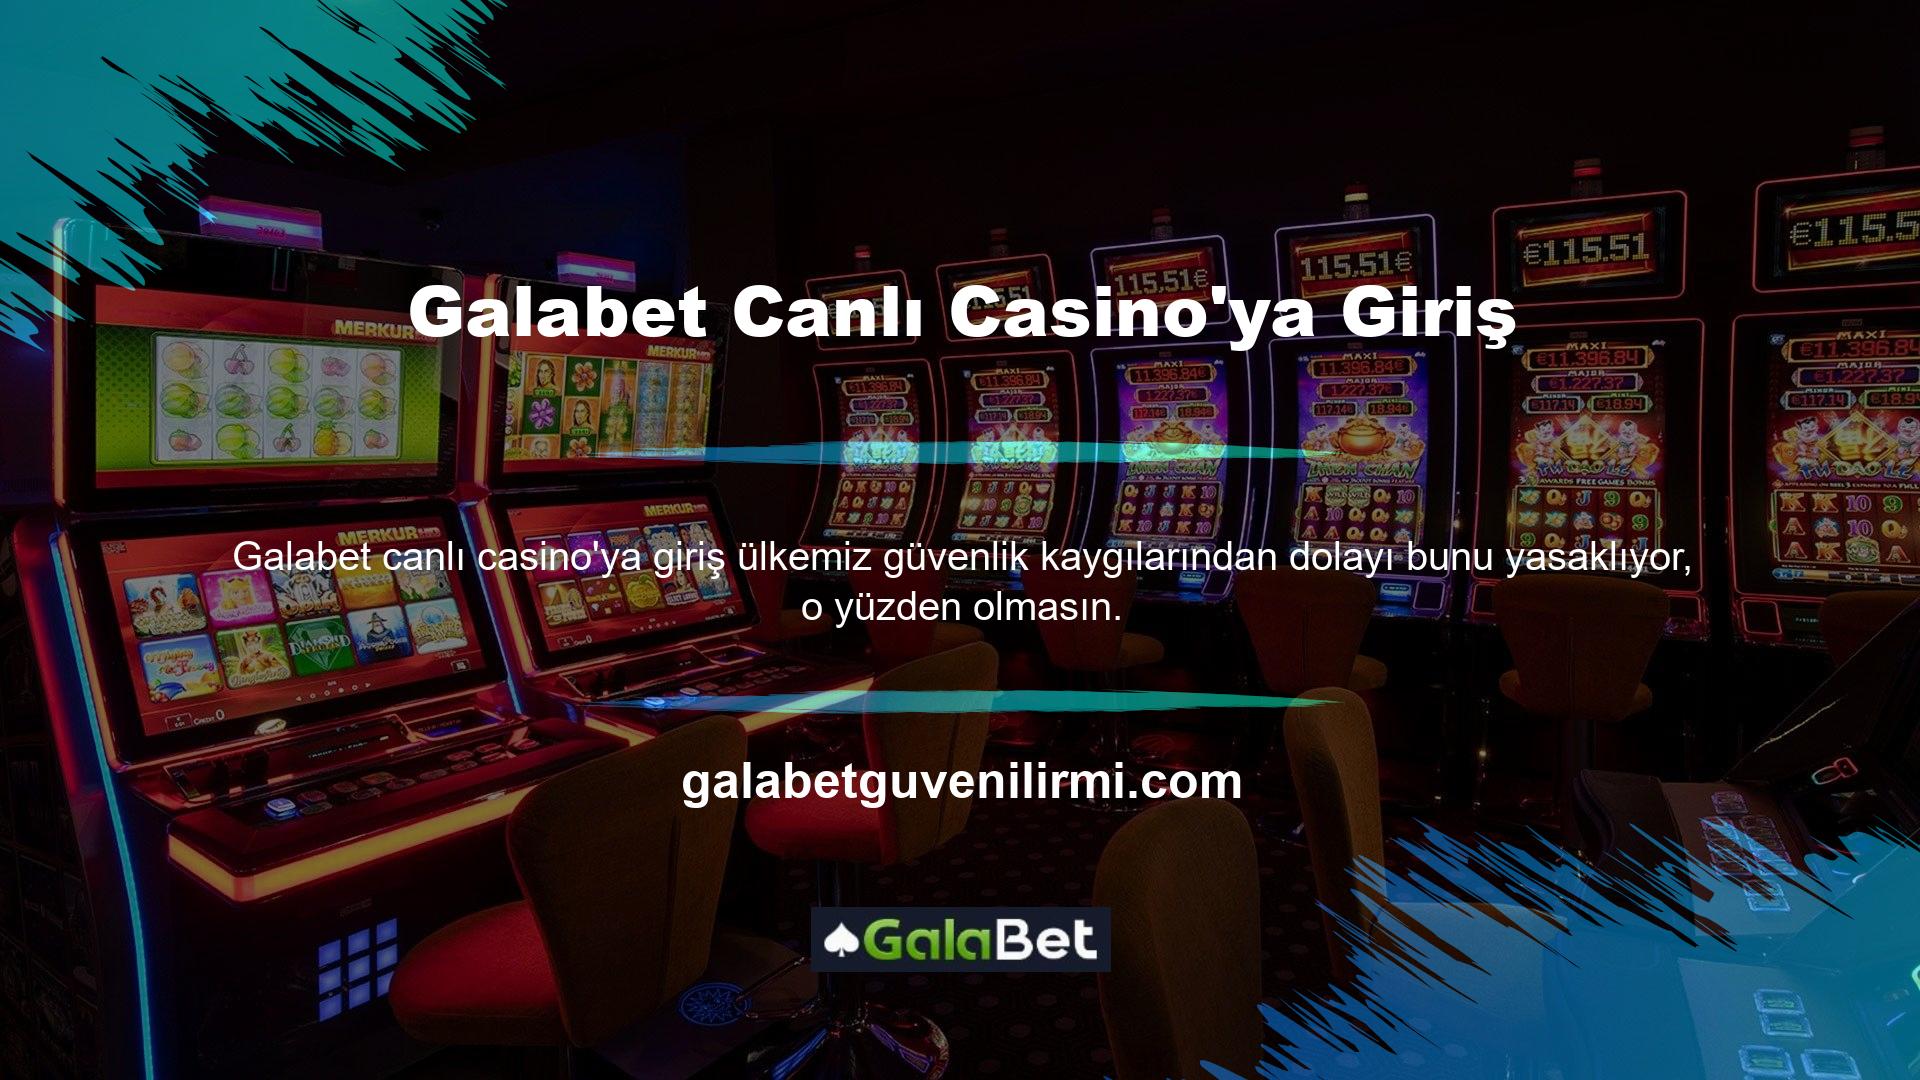 Galabet giriş canlı casino bahis sitelerinin kalitesi ve güvenilirliği kurulmuştur